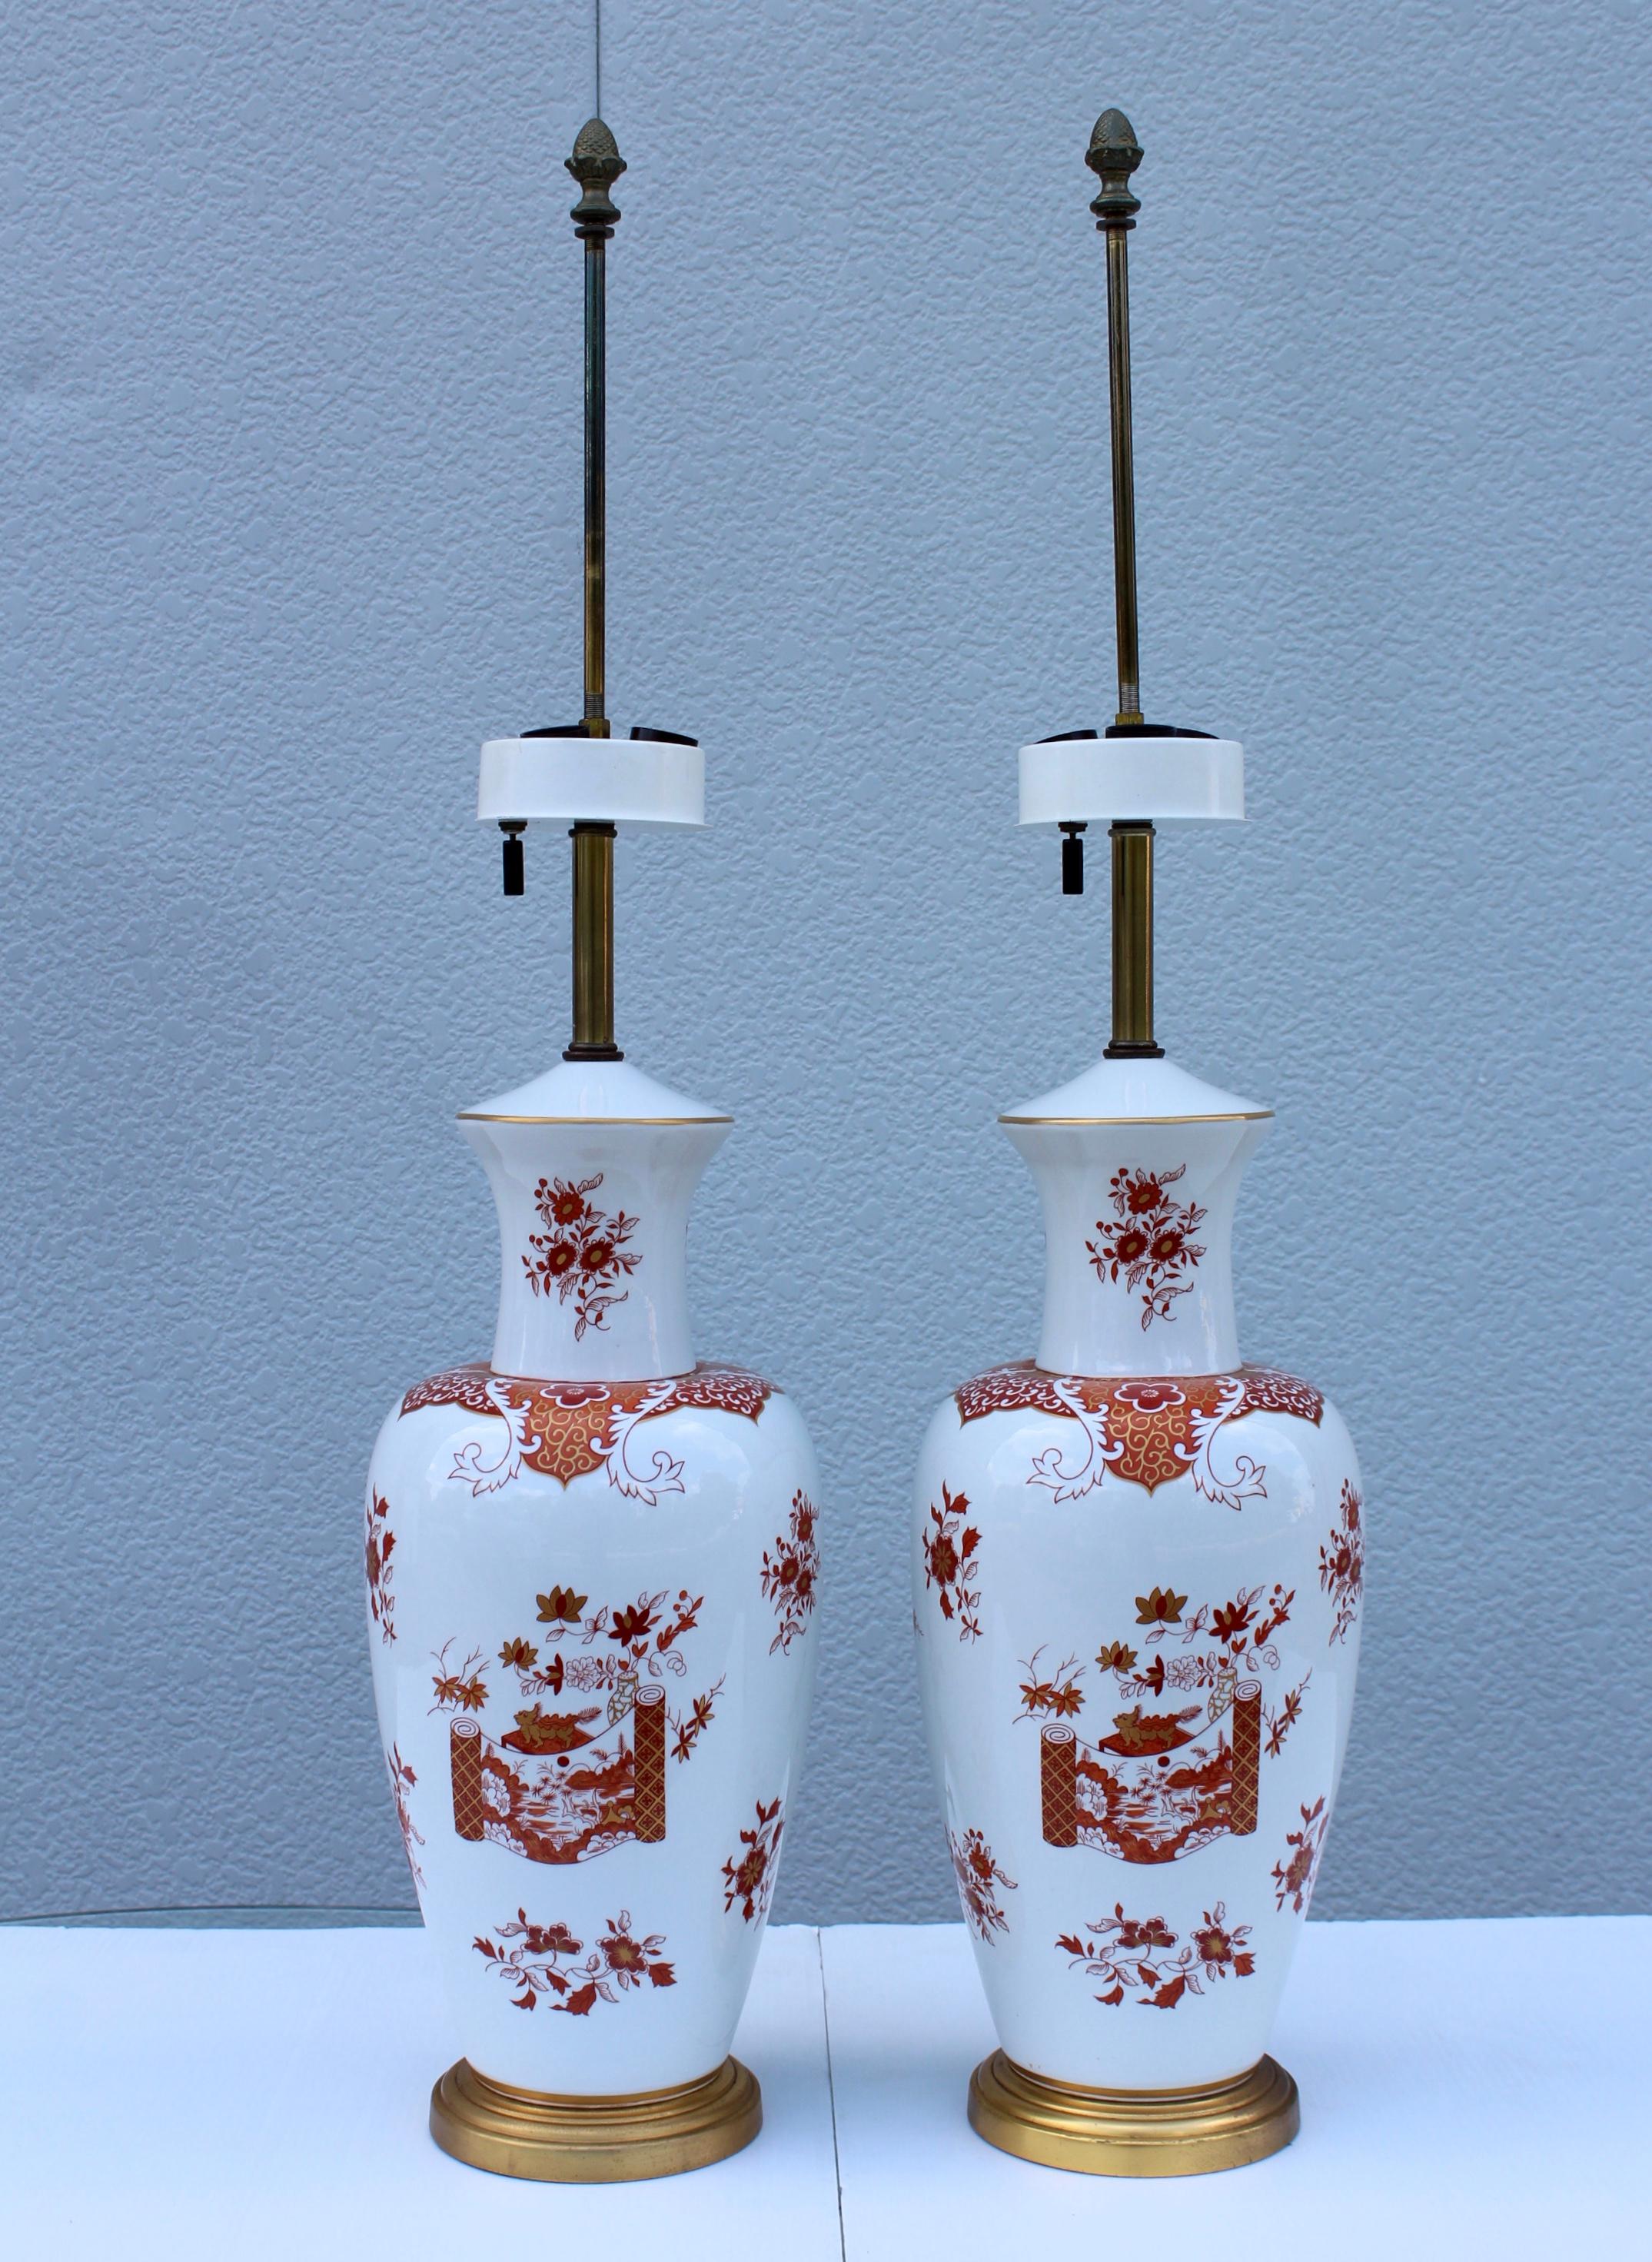 Superbe paire de lampes de table en porcelaine Blanc de Chine des années 1950, avec détails peints à la main et base dorée.

Ombres pour la photographie uniquement.